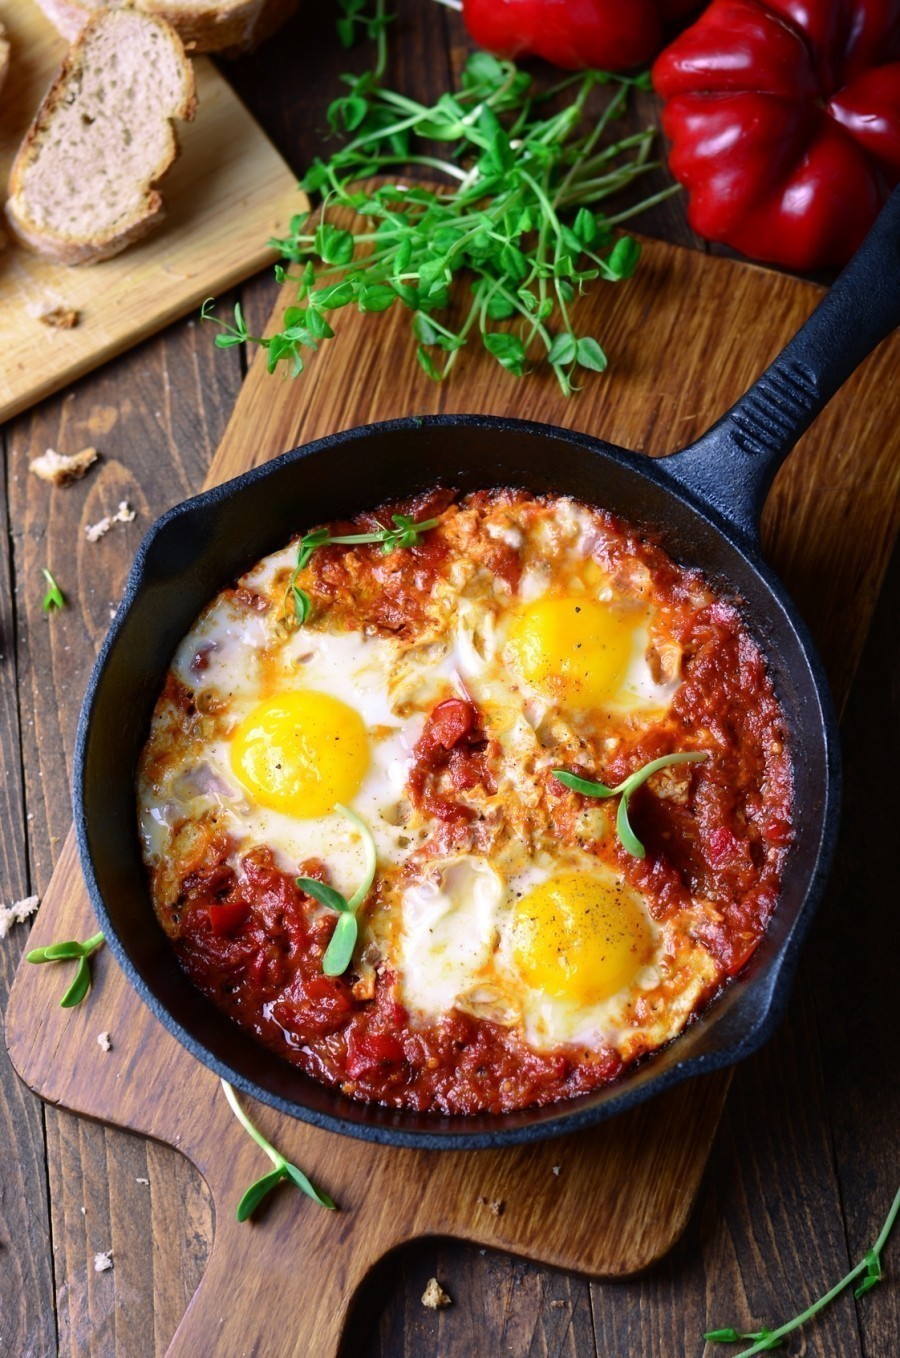 Lust auf ein herzhaftes Frühstück? Dann können wir dieses Rezept empfehlen: Shakshuka, eine warme, pikante Tomatensoße dazu frische Kräuter und Eier!